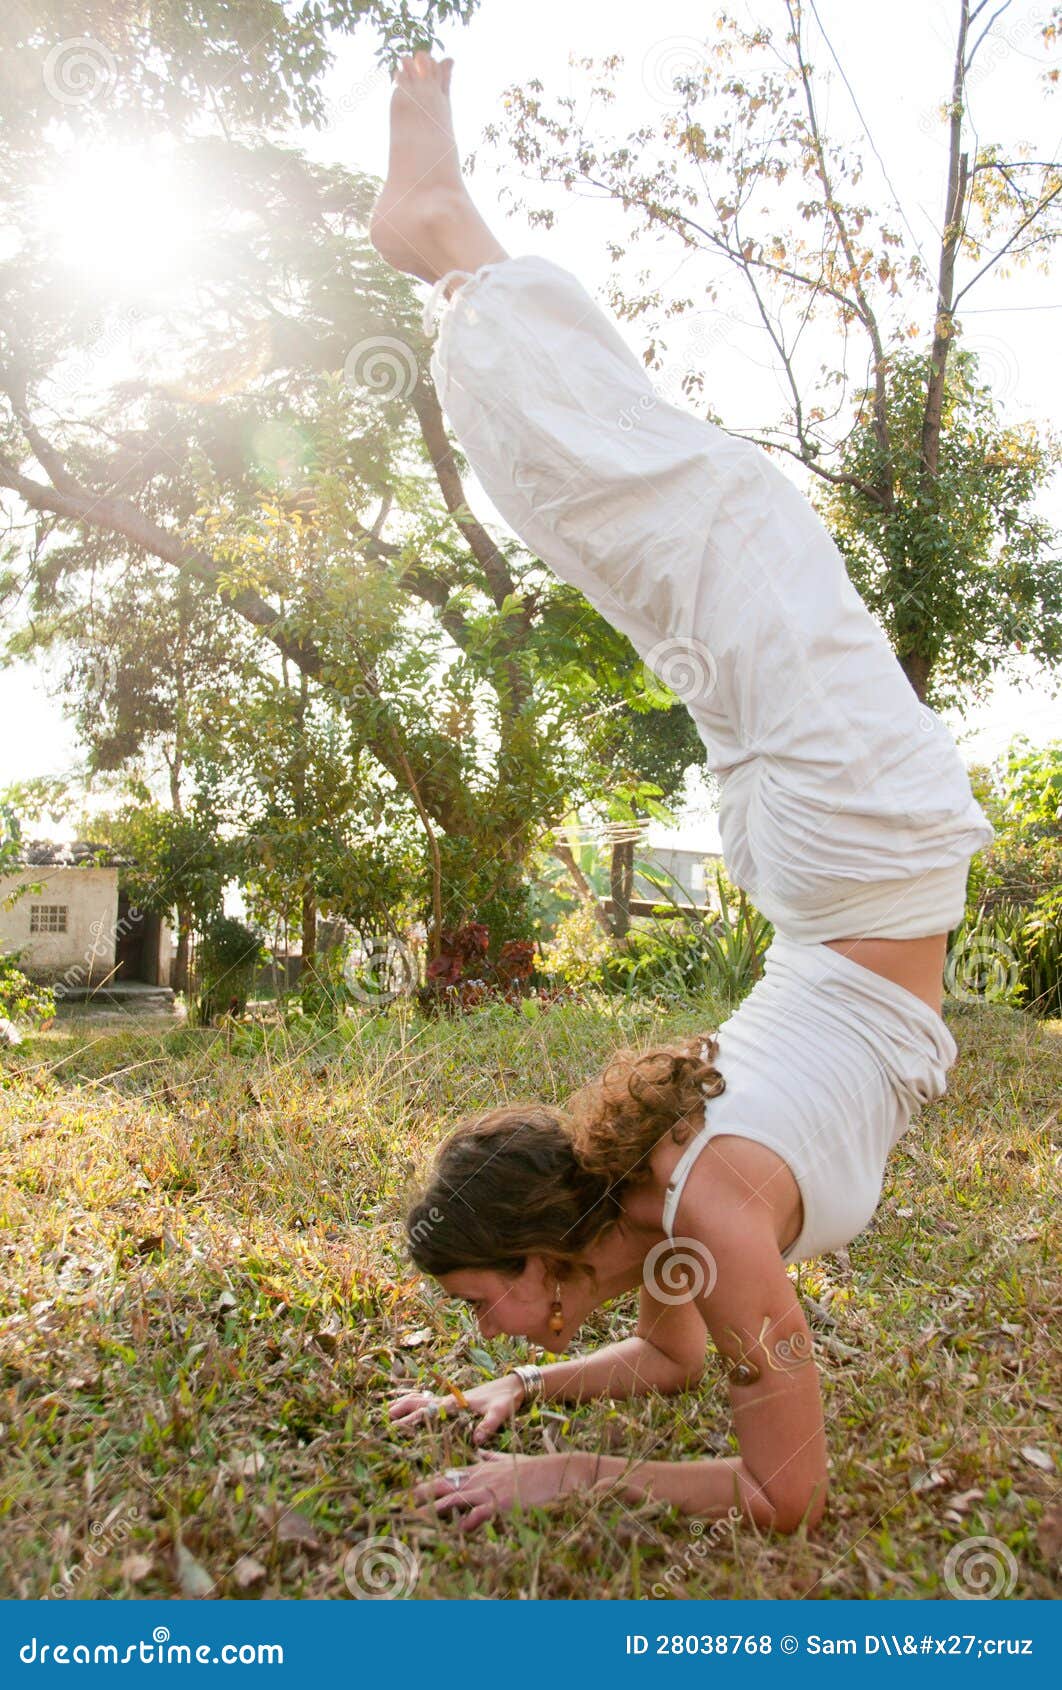 Female Yoga Master Stock Photo Image Of Girl Nature